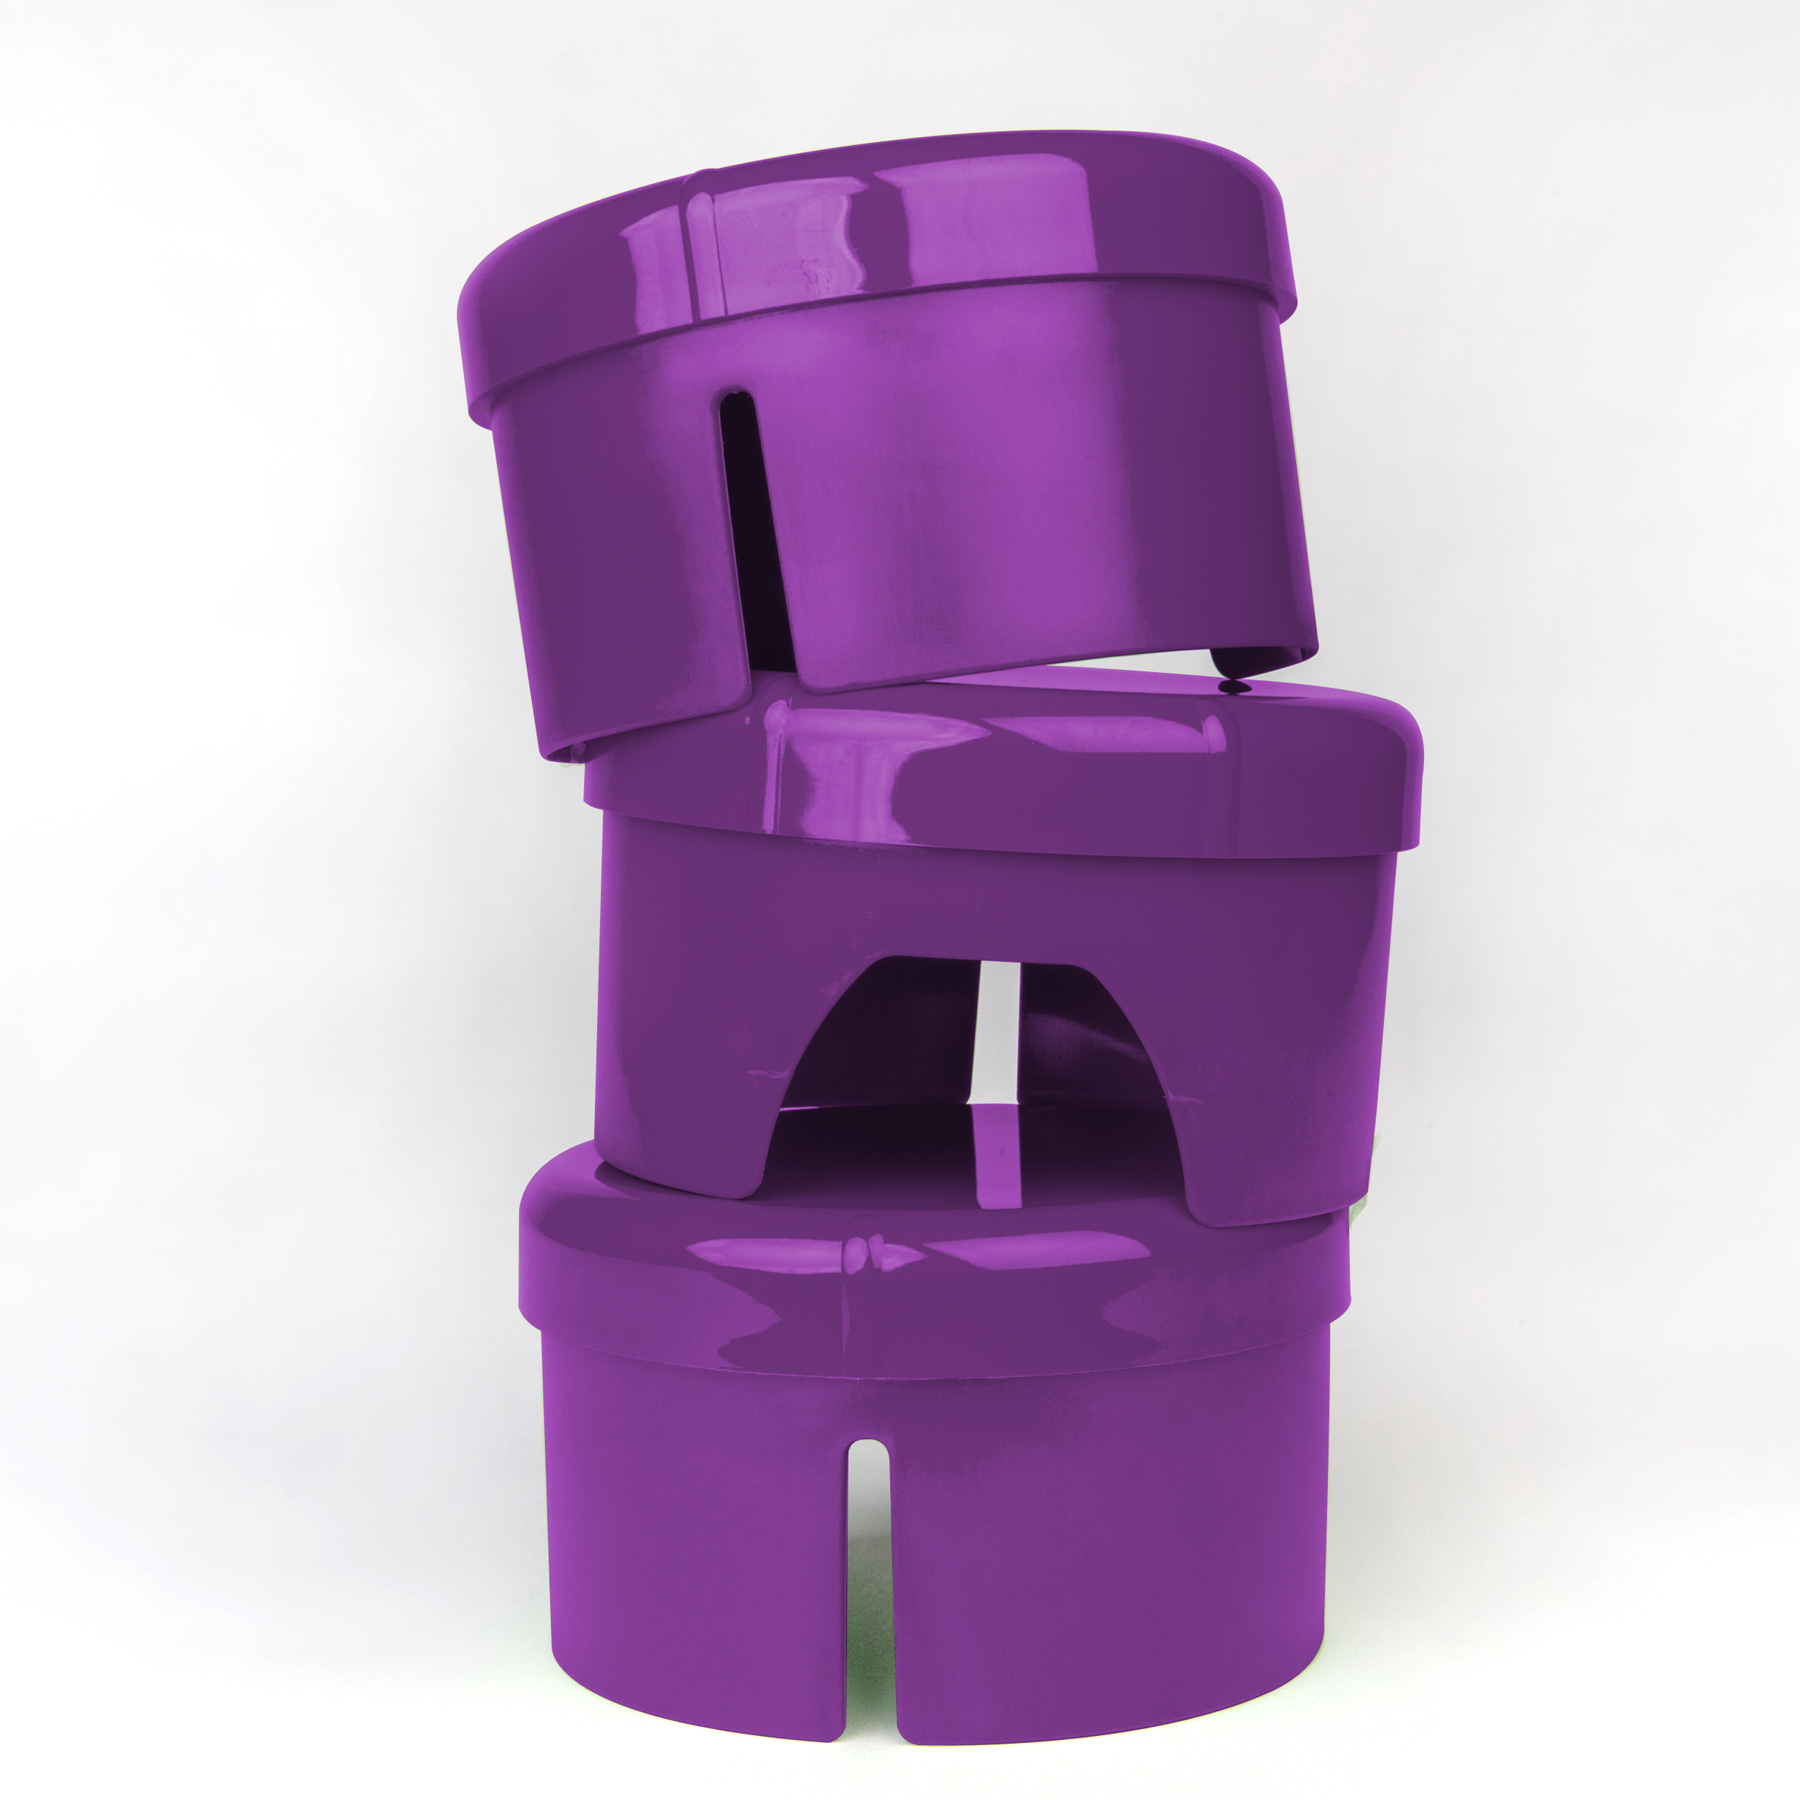 vaLon Zephyr Deckel zu Kanne aus schadstofffreiem Kunststoff in der Farbe lila.